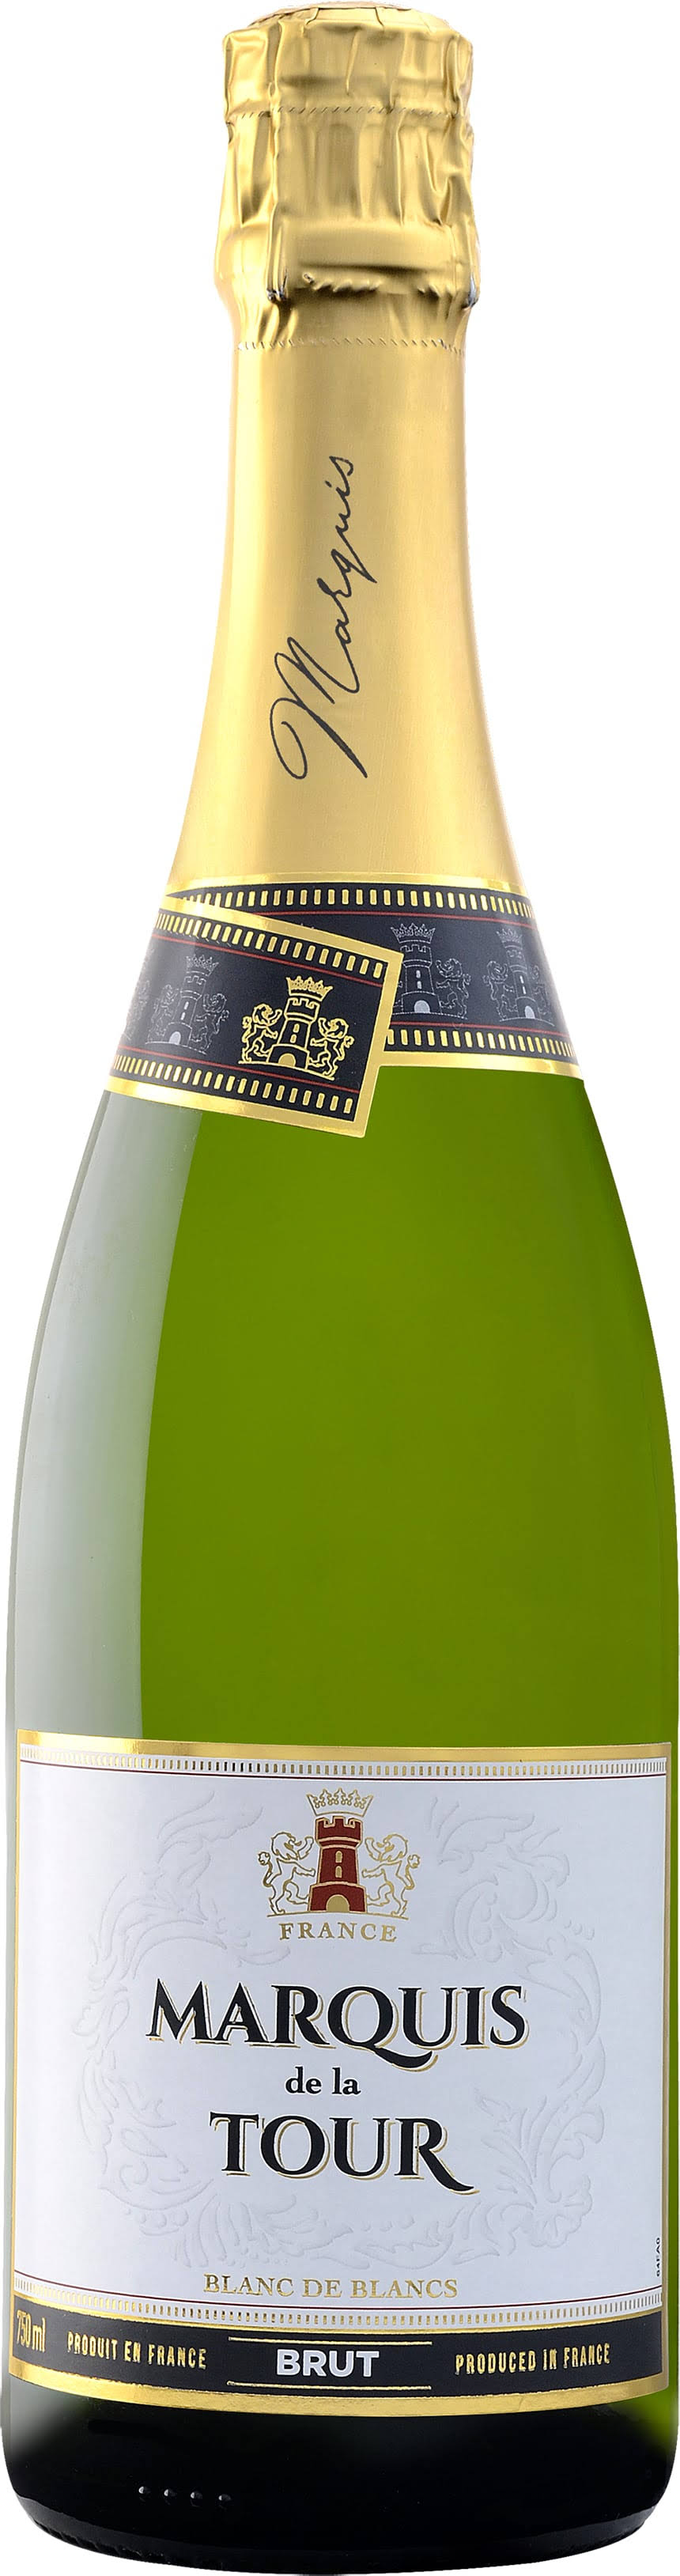 Marquis de la Tour Brut - 750 ml bottle